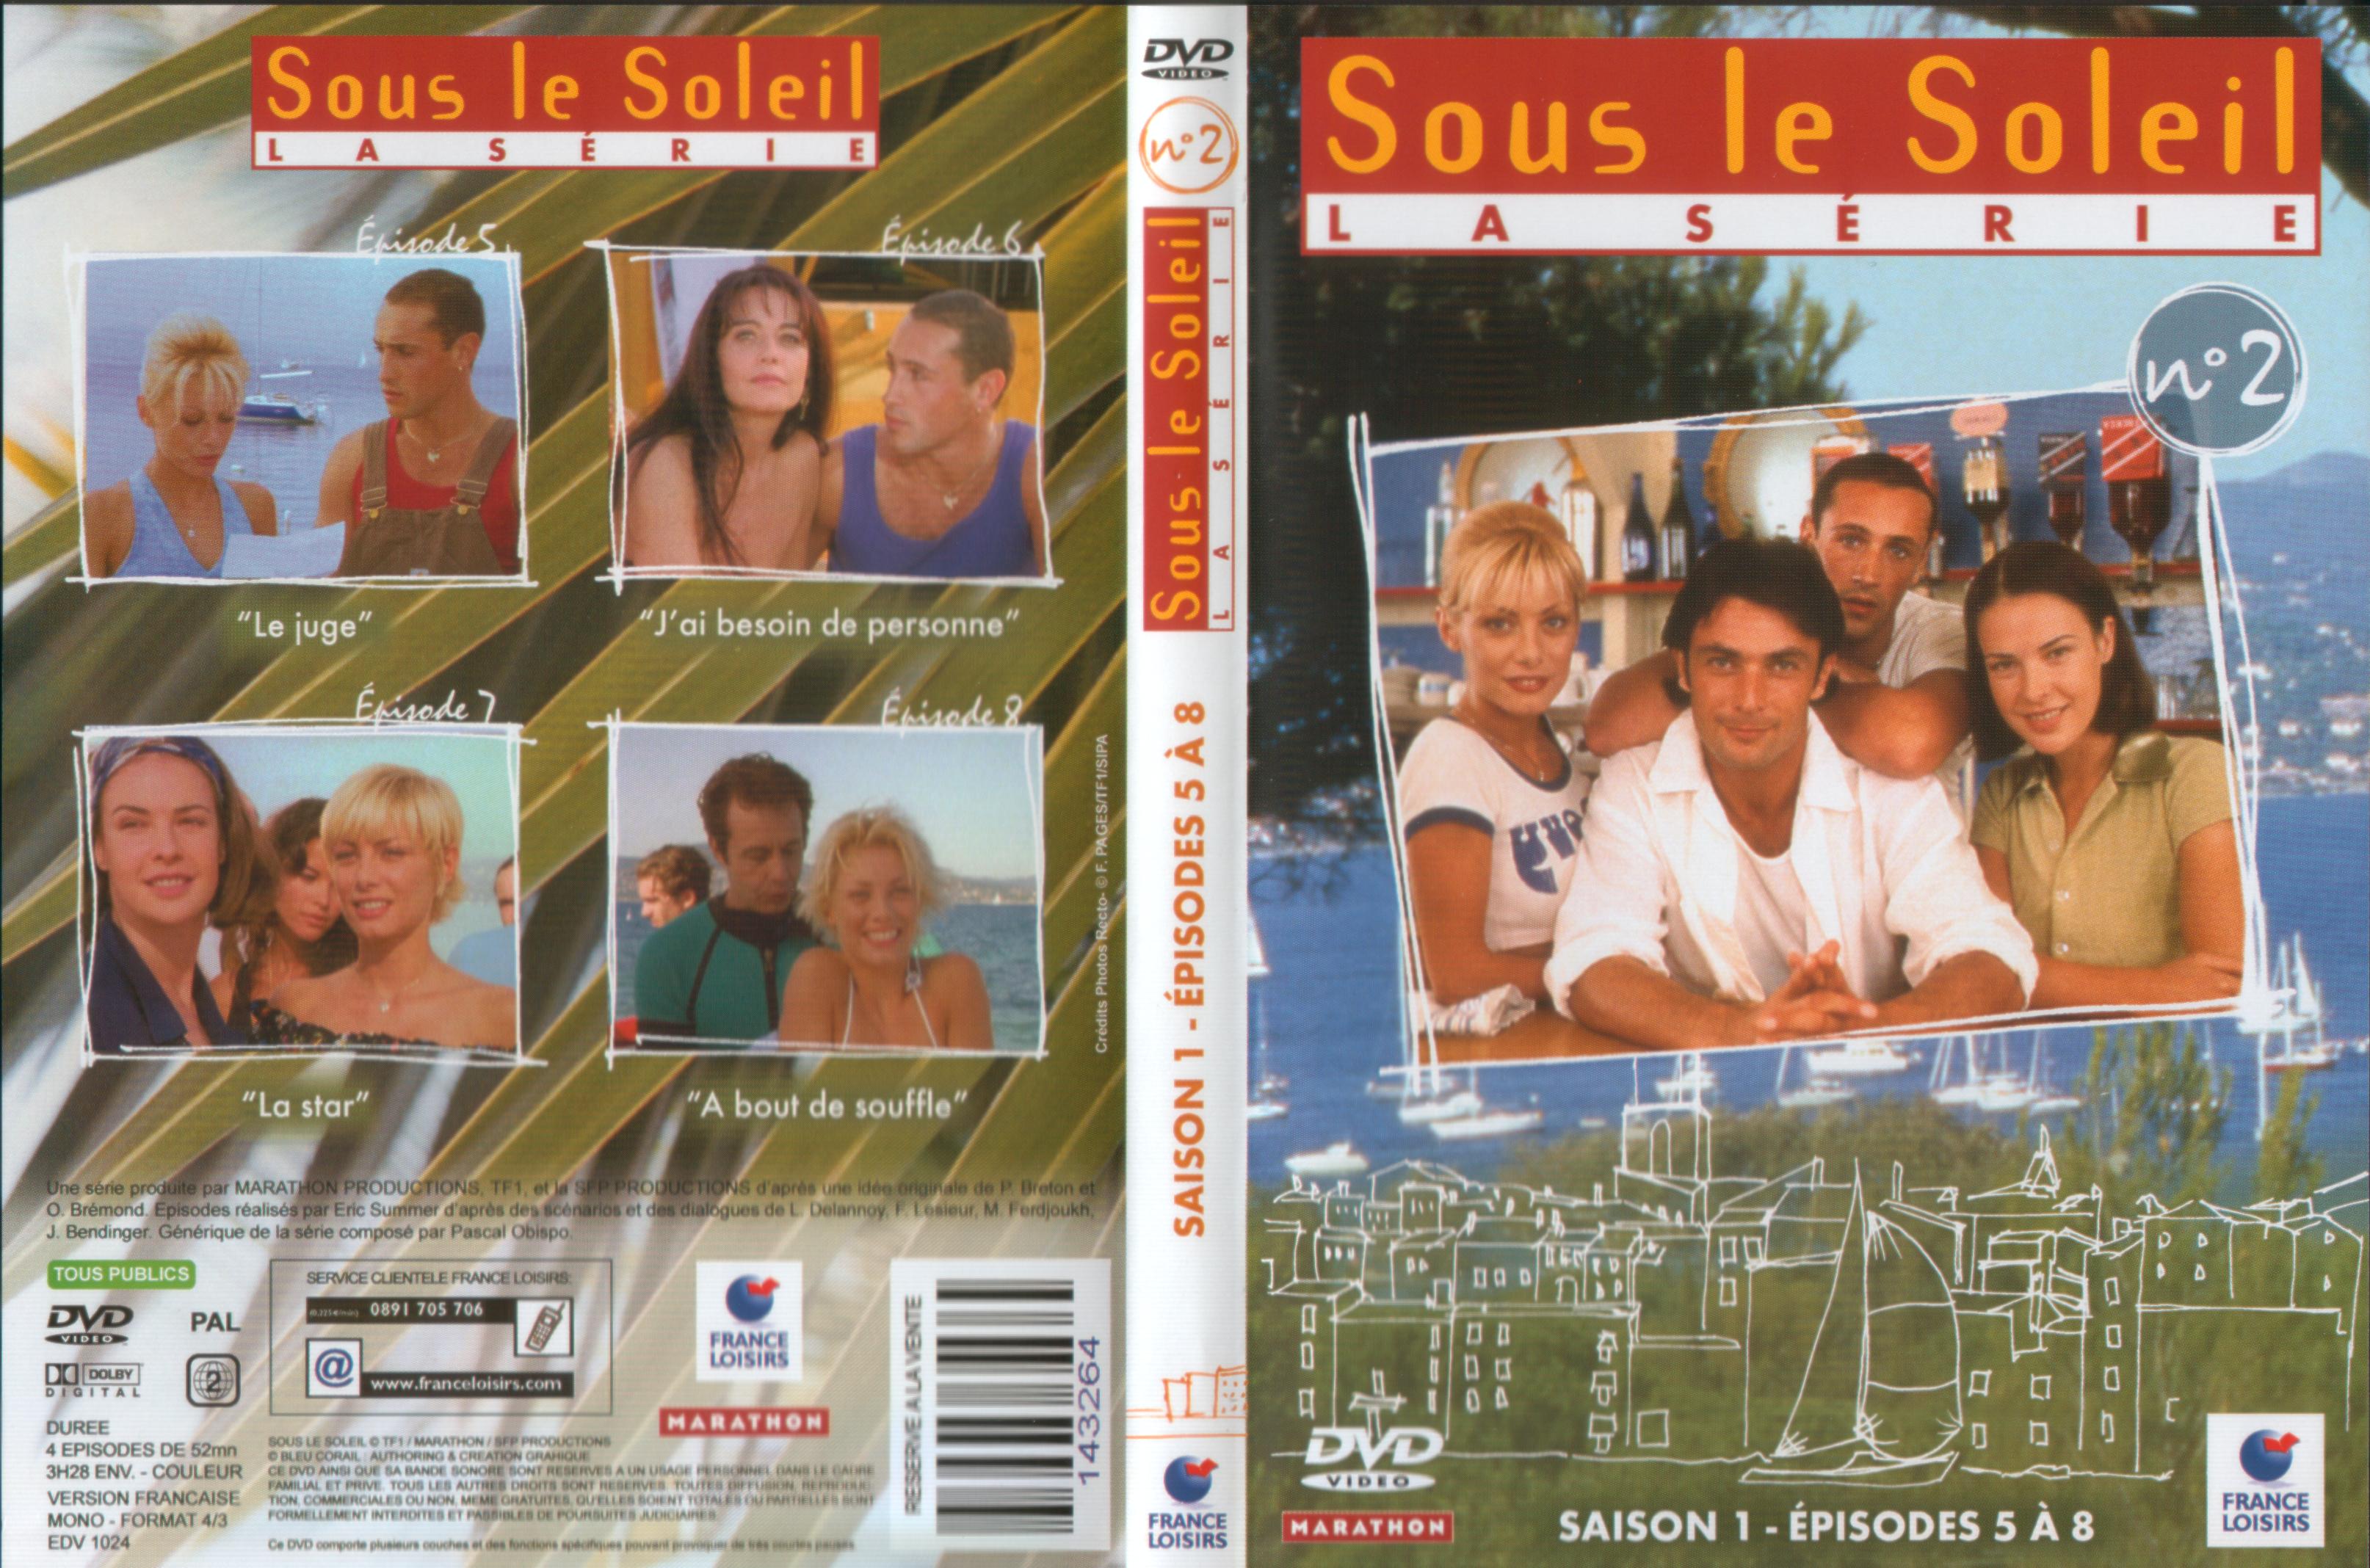 Jaquette DVD Sous le soleil saison 1 vol 2 v2